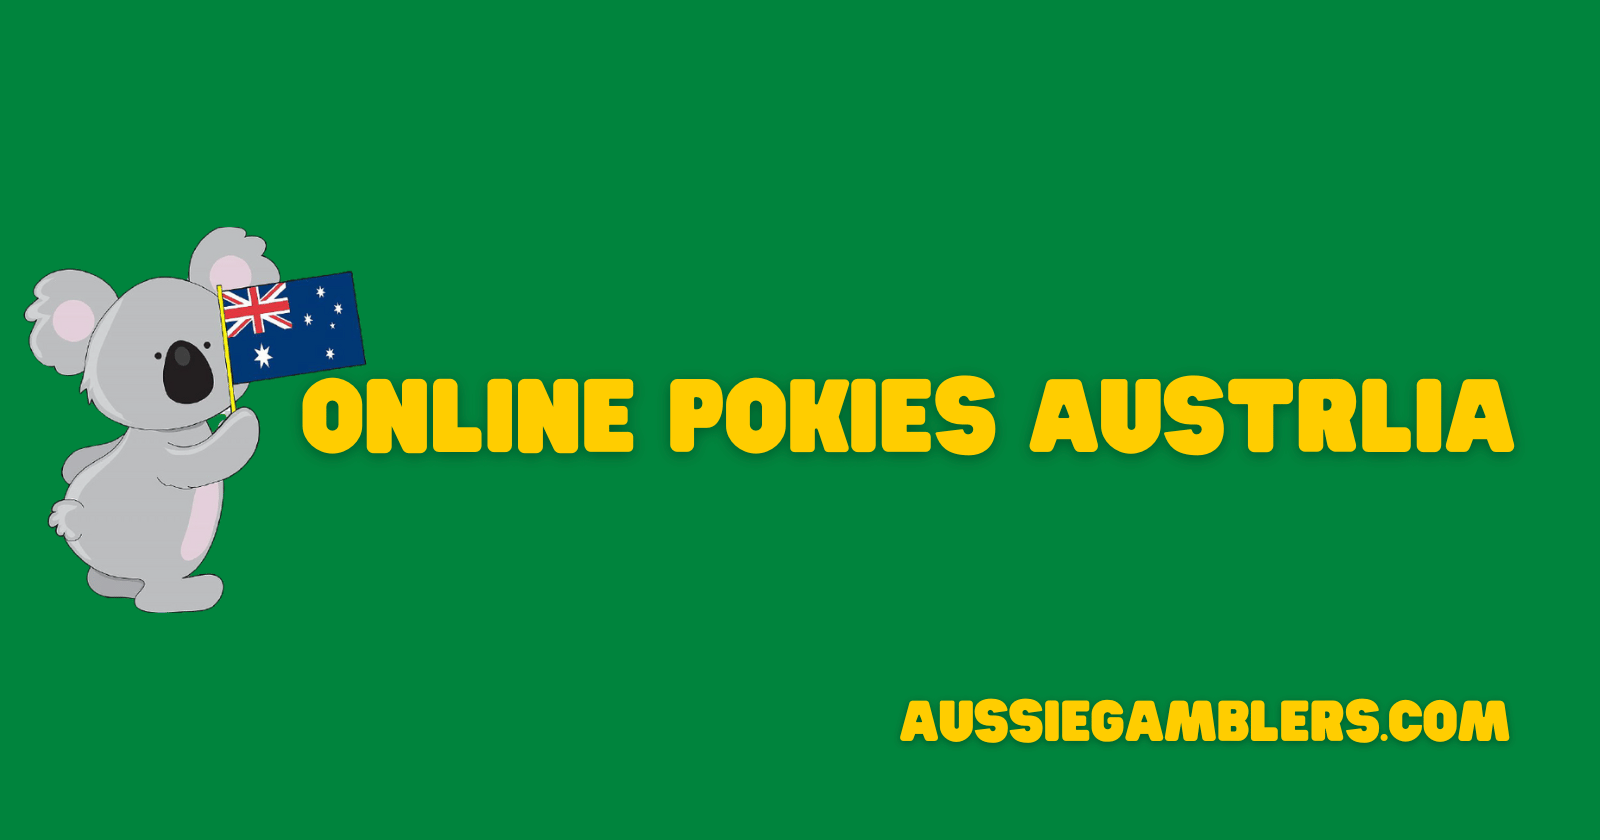 Online Pokies Banner